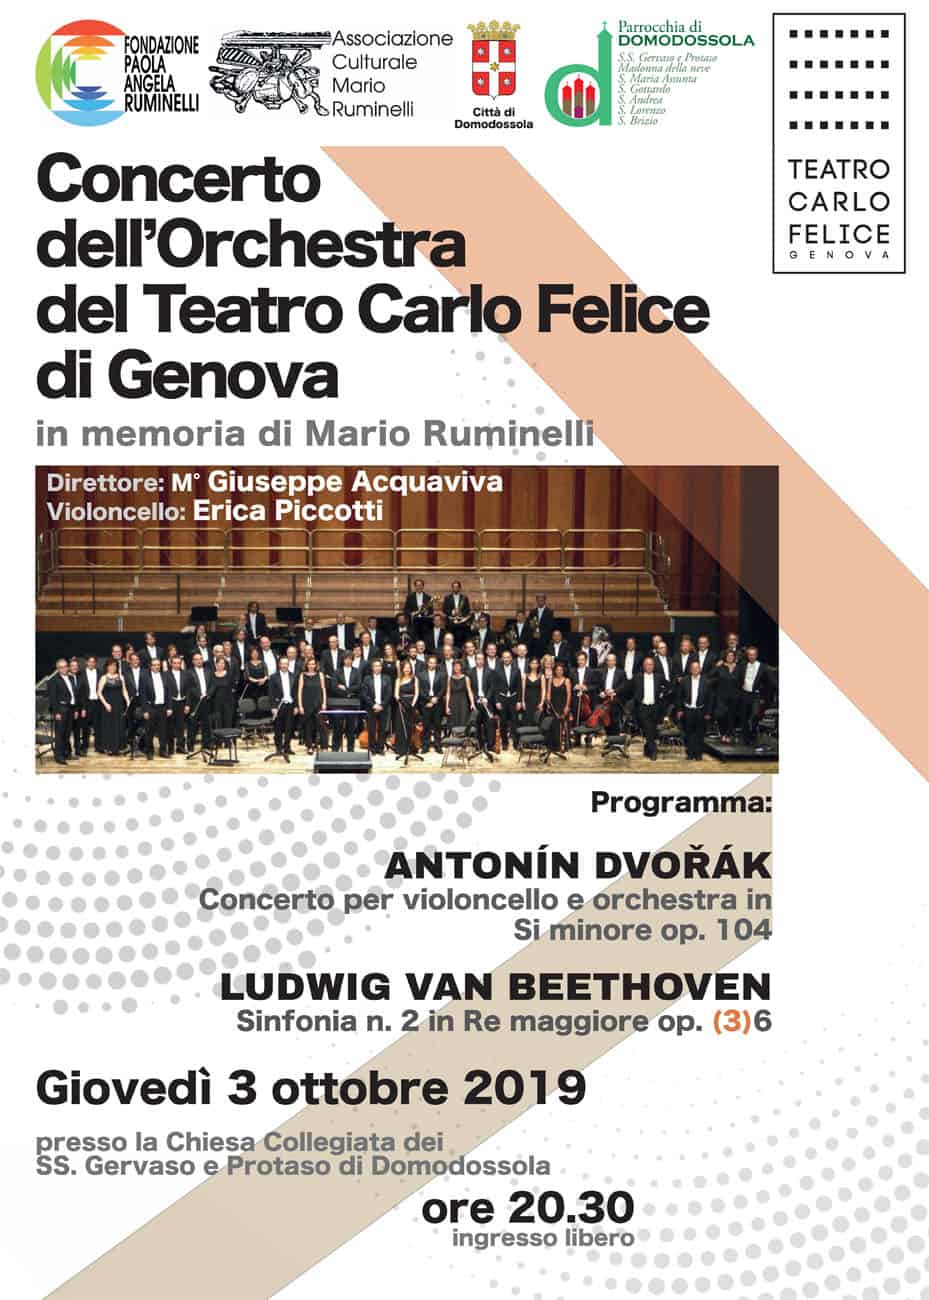 Concerto dell’Orchestra del Teatro Carlo Felice di Genova